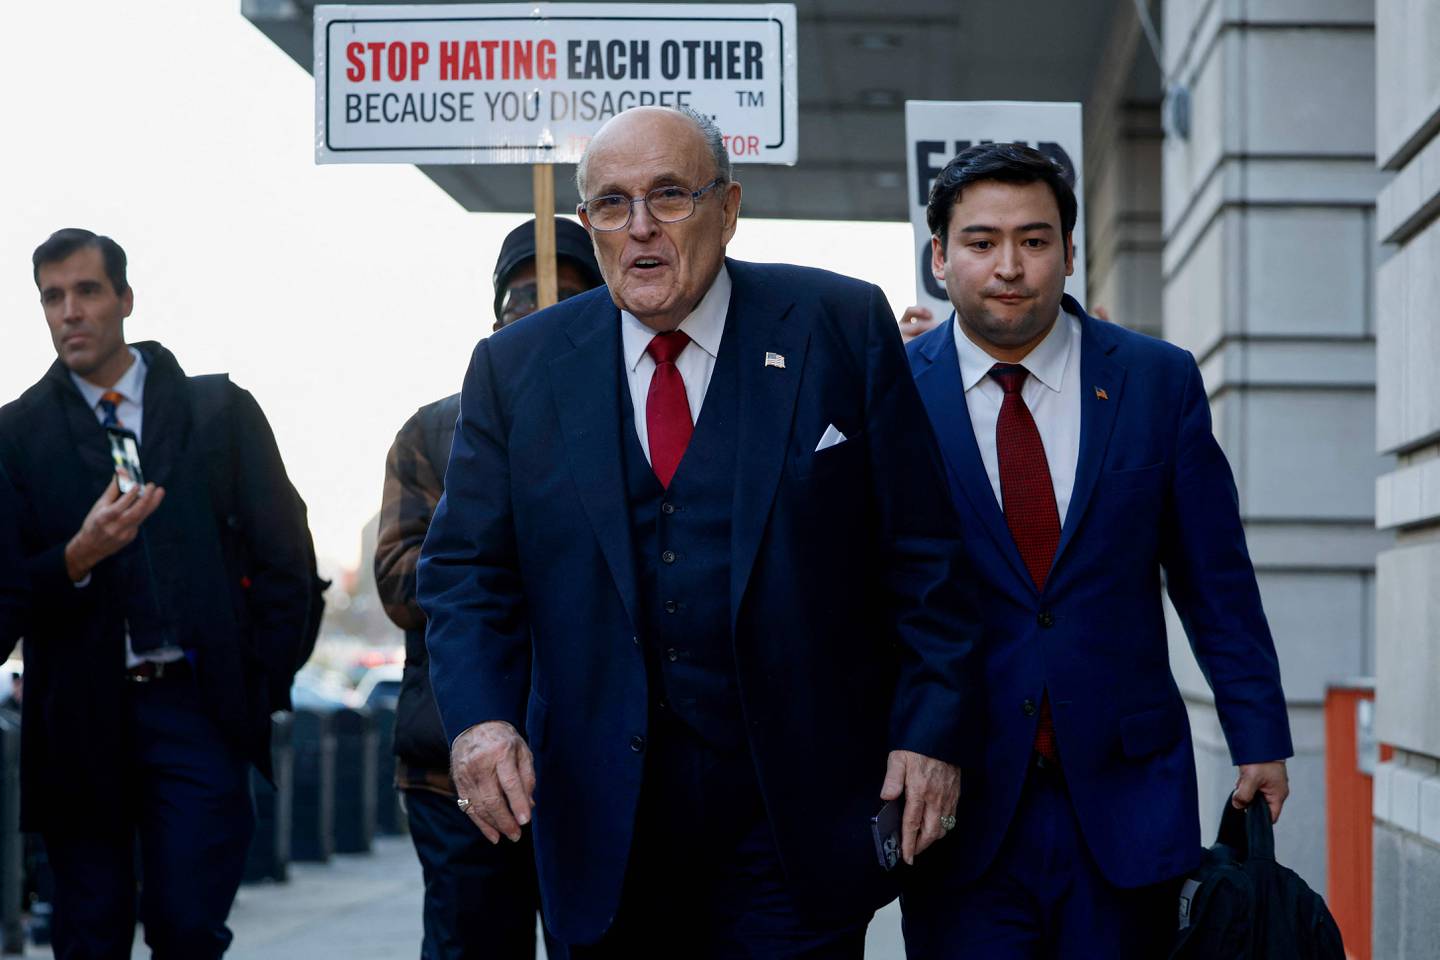 Rudy Giuliani, exabogado personal del expresidente estadounidense Donald Trump, camina hacia los reporteros afuera del Tribunal de Distrito de EE. UU. E. Barrett Prettyman después de que se alcanzara un veredicto en su juicio por  difamación.